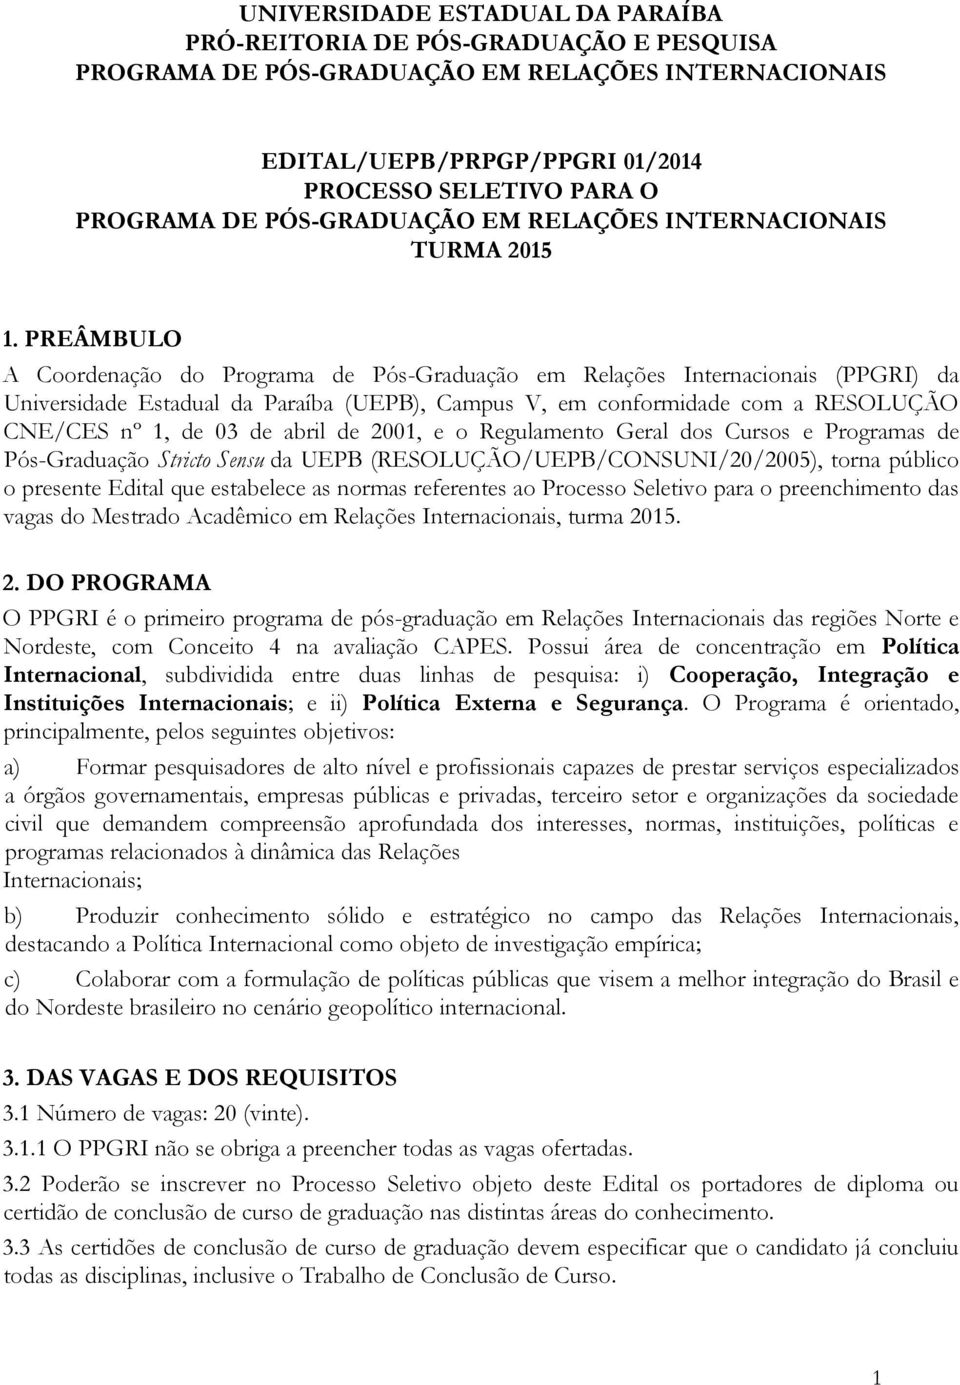 PREÂMBULO A Coordenação do Programa de Pós-Graduação em Relações Internacionais (PPGRI) da Universidade Estadual da Paraíba (UEPB), Campus V, em conformidade com a RESOLUÇÃO CNE/CES nº 1, de 03 de